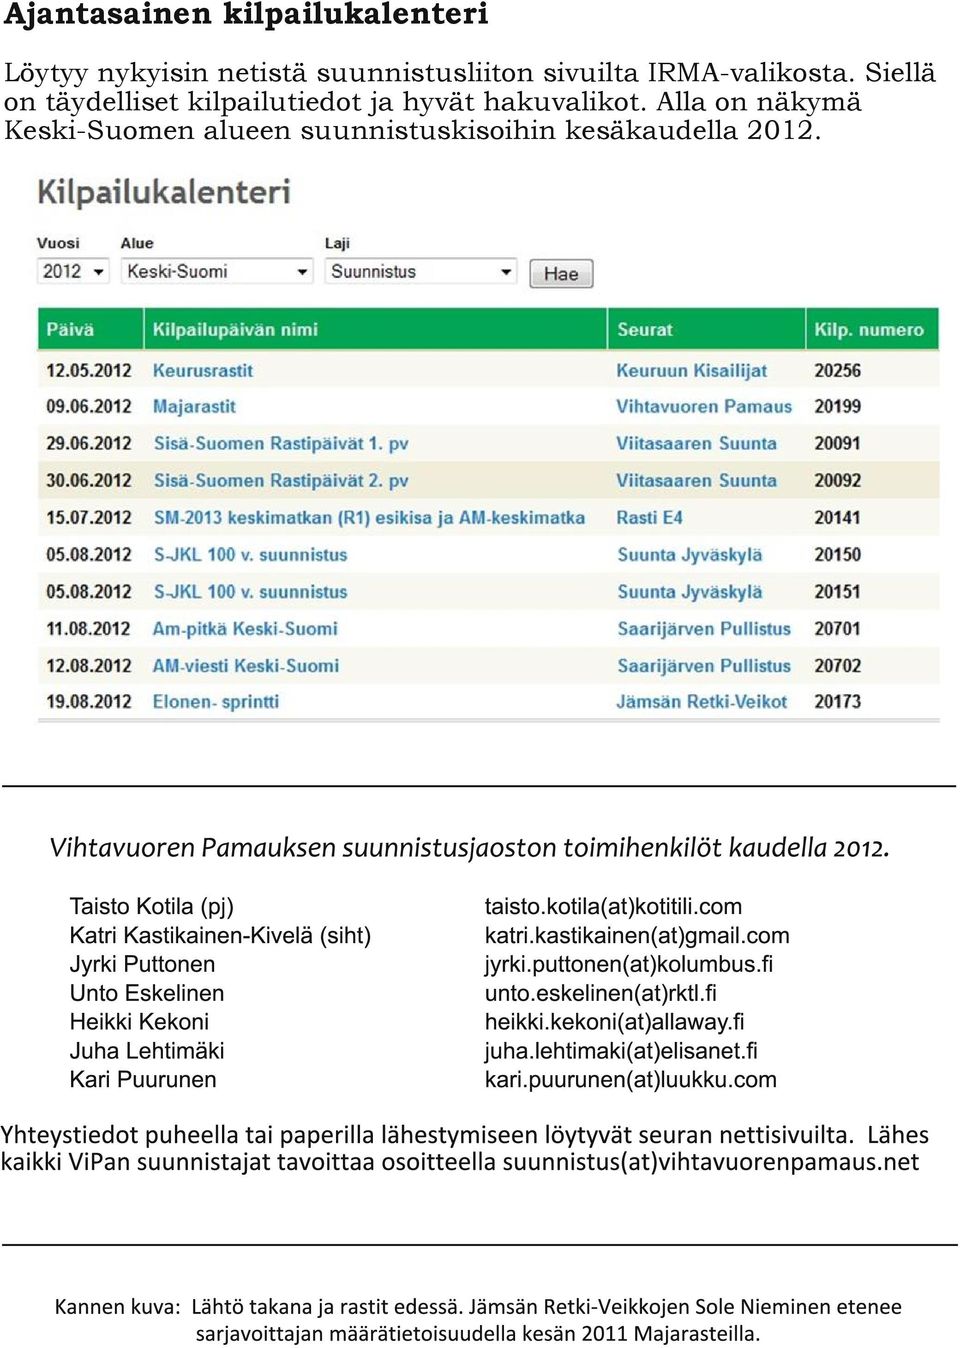 Taisto Kotila (pj) Katri Kastikainen-Kivelä (siht) Jyrki Puttonen Unto Eskelinen Heikki Kekoni Juha Lehtimäki Kari Puurunen taisto.